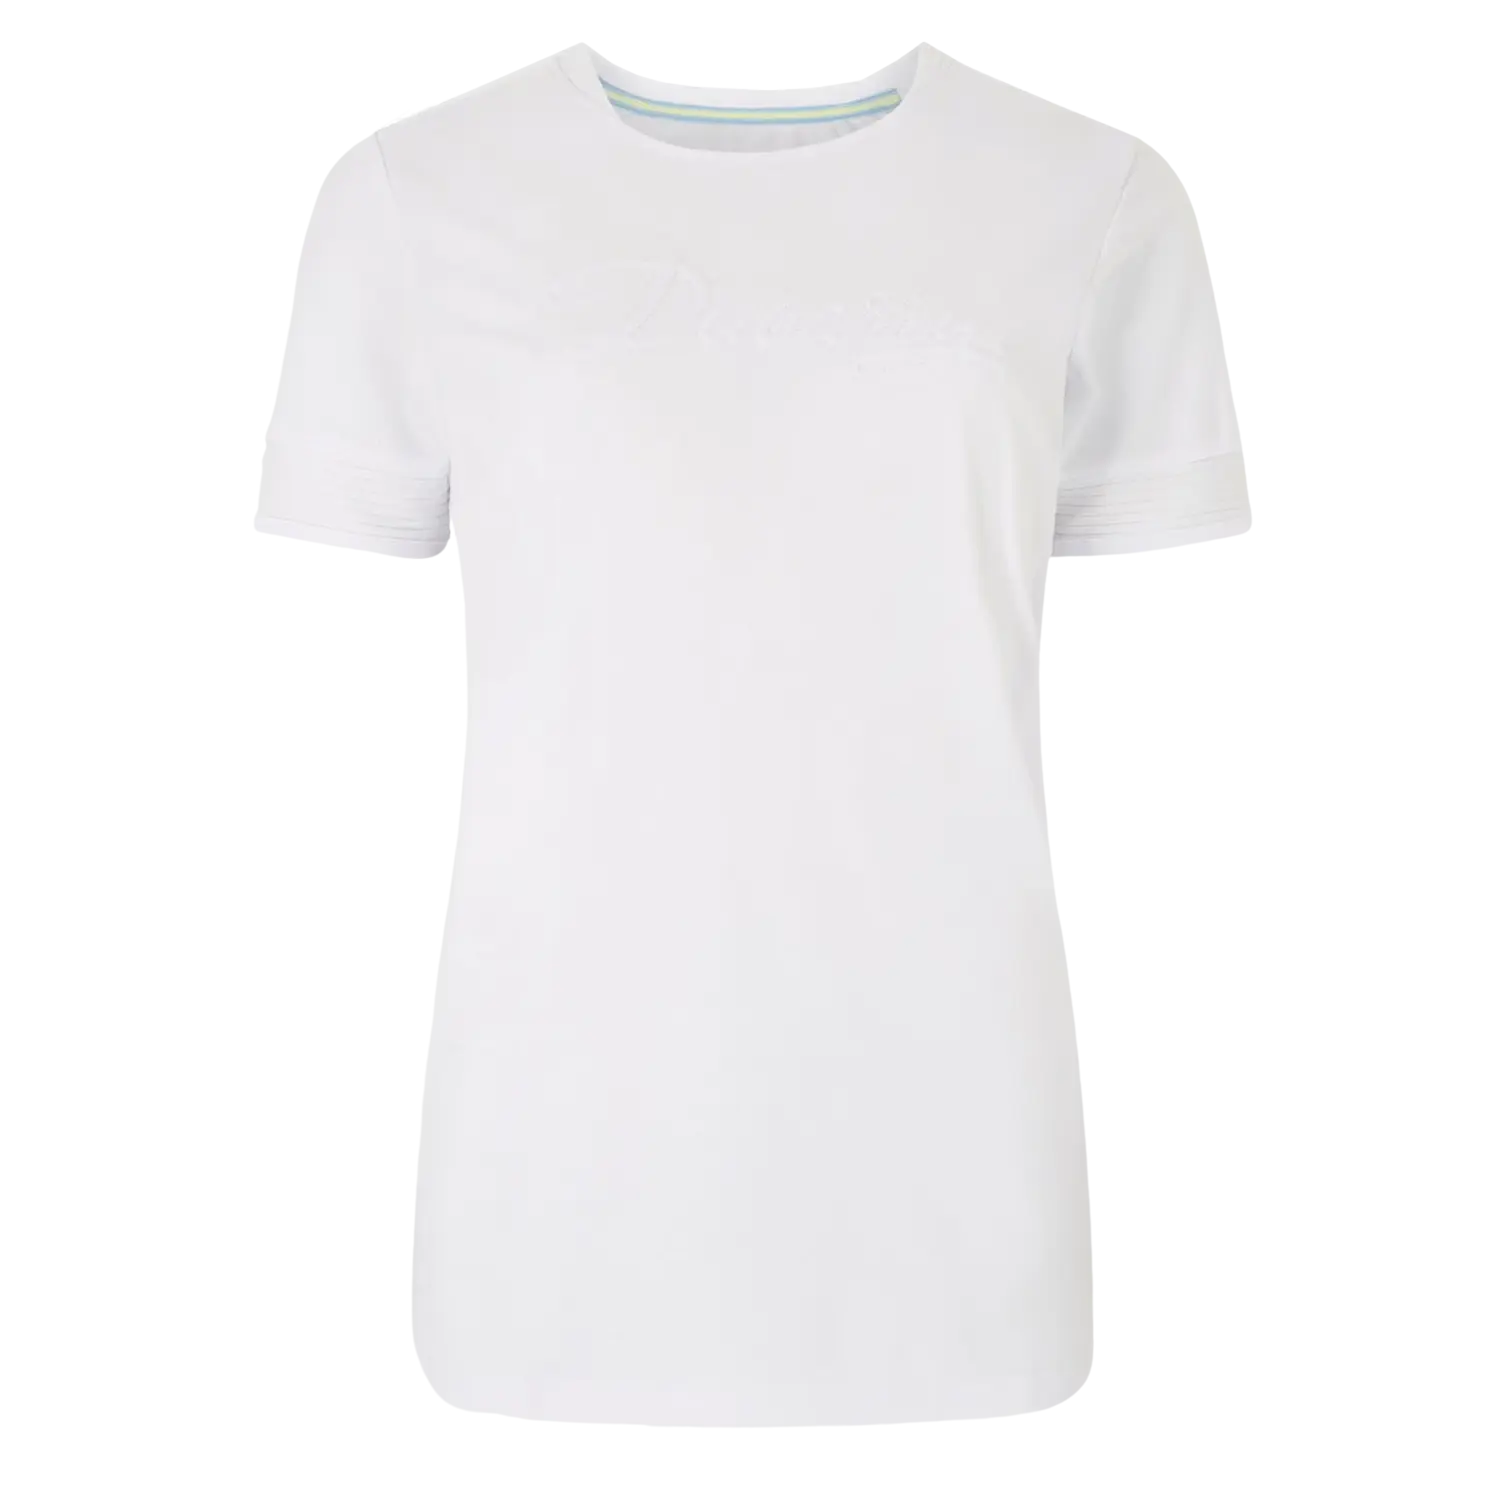 Dubarry Trim Short Sleeve T-Shirt for Women